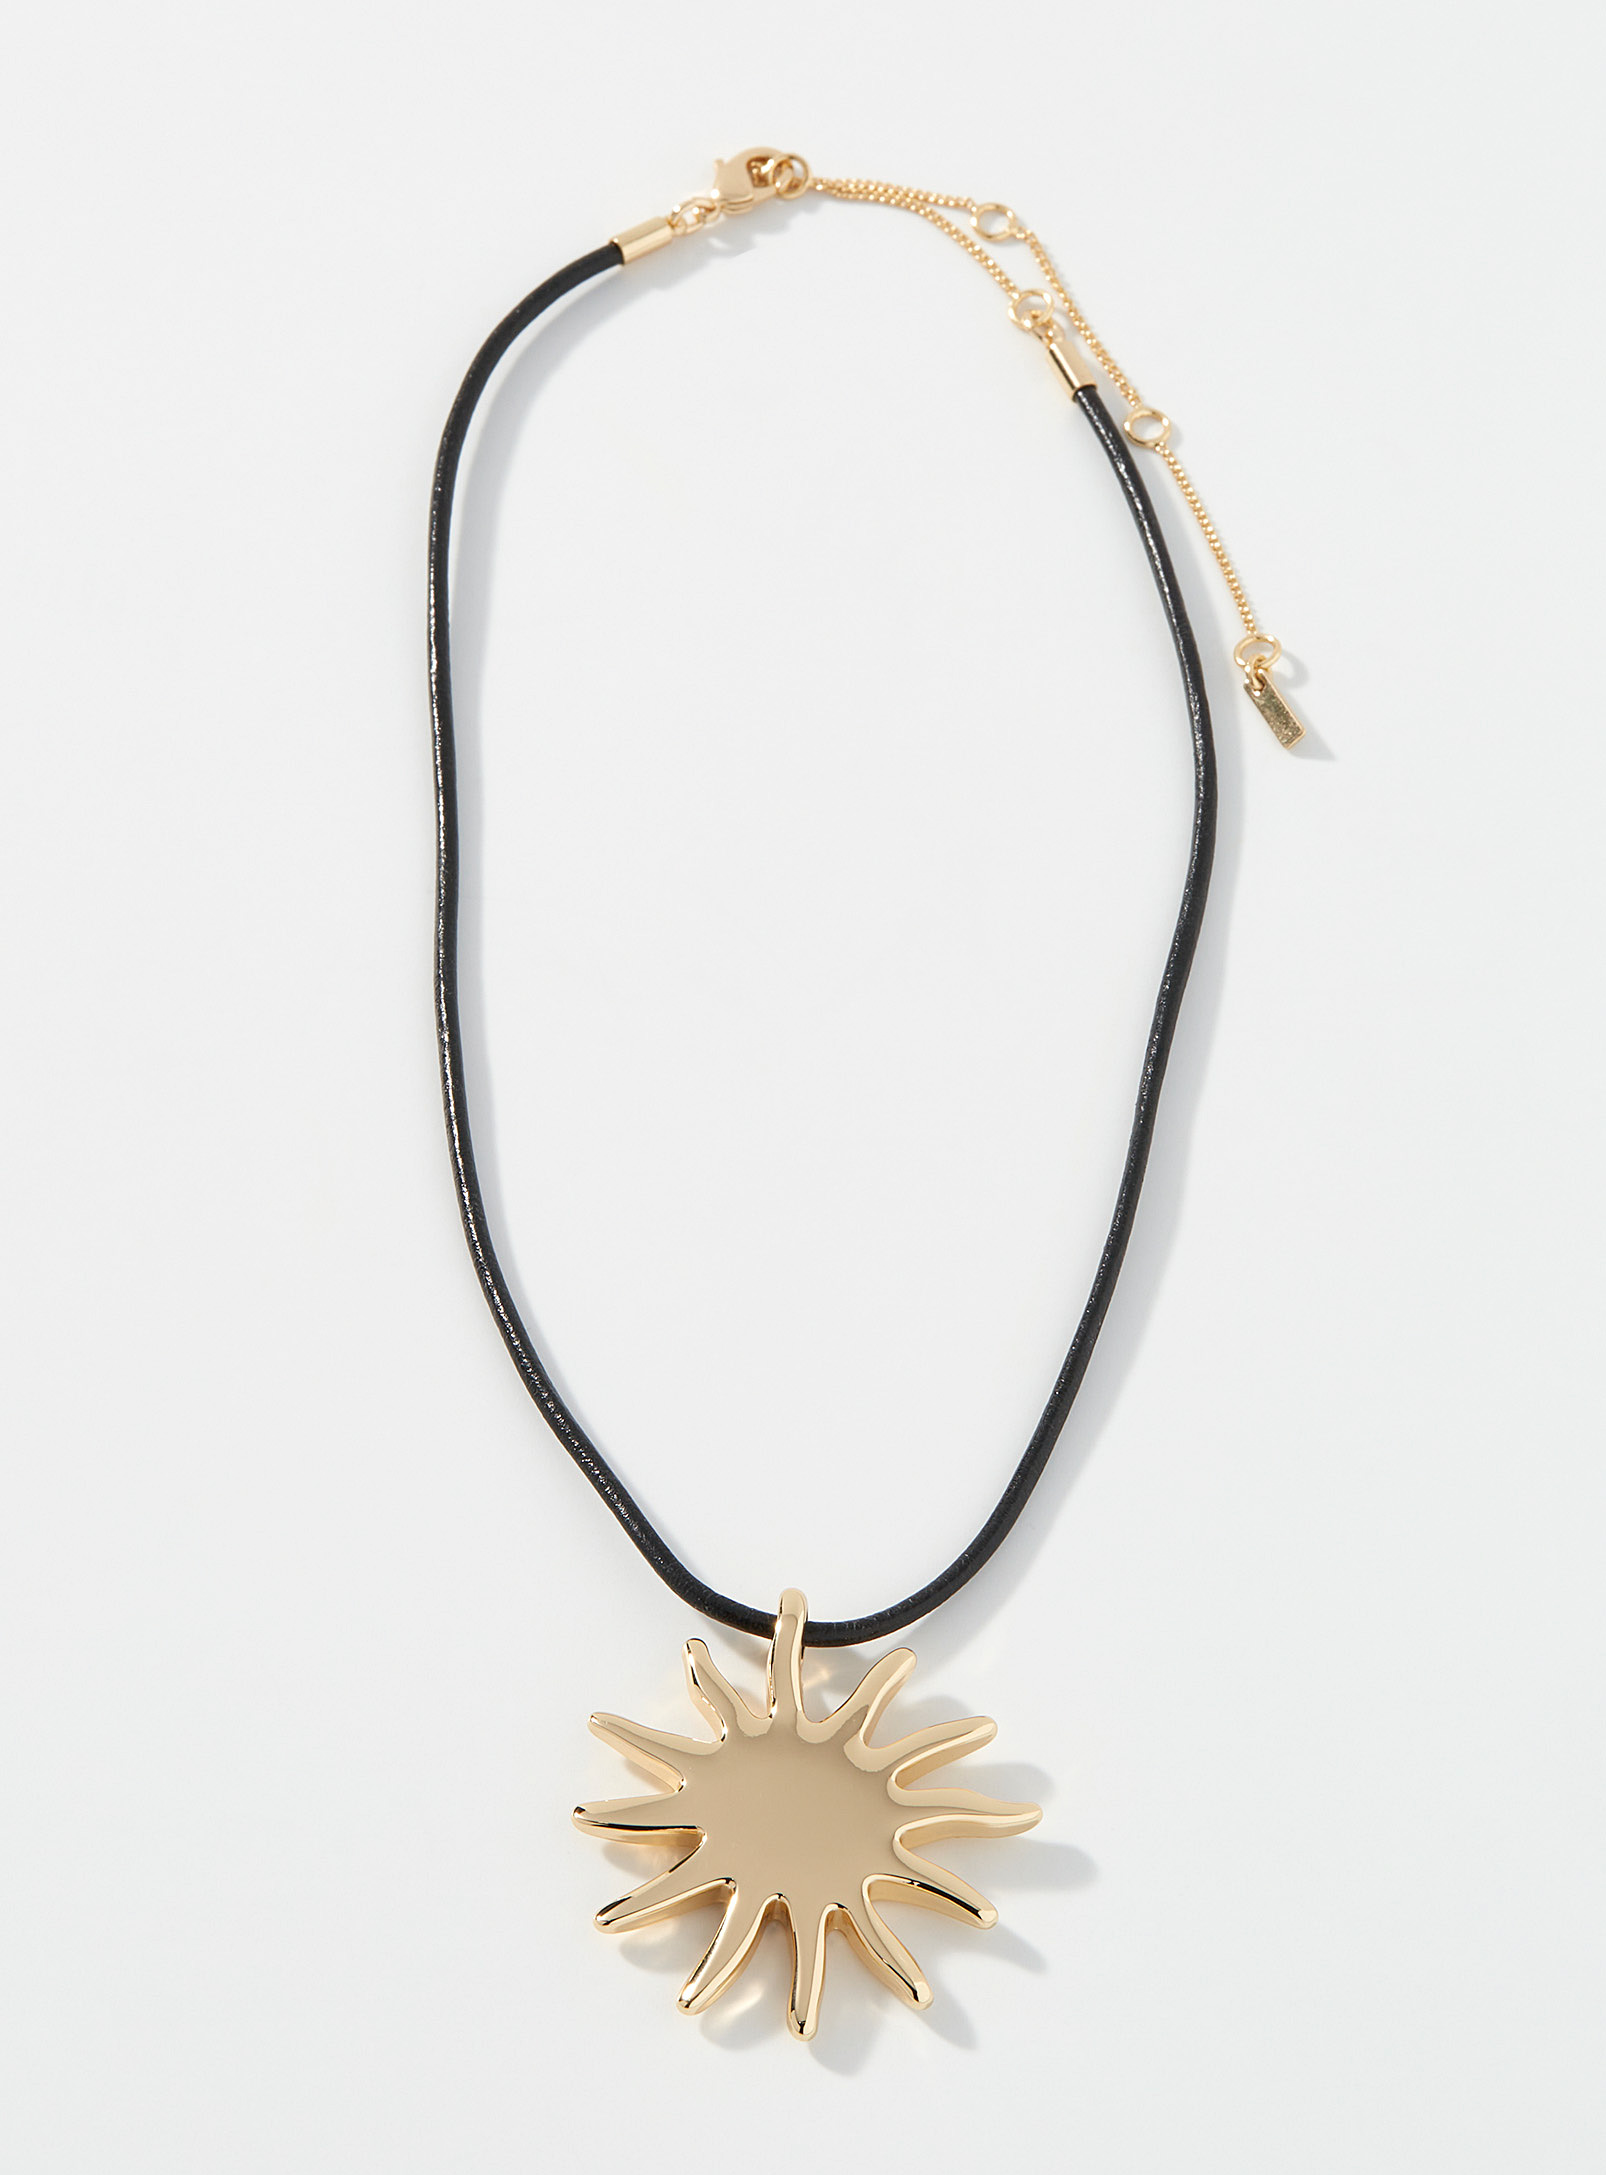 Pilgrim - Le collier corde soleil doré